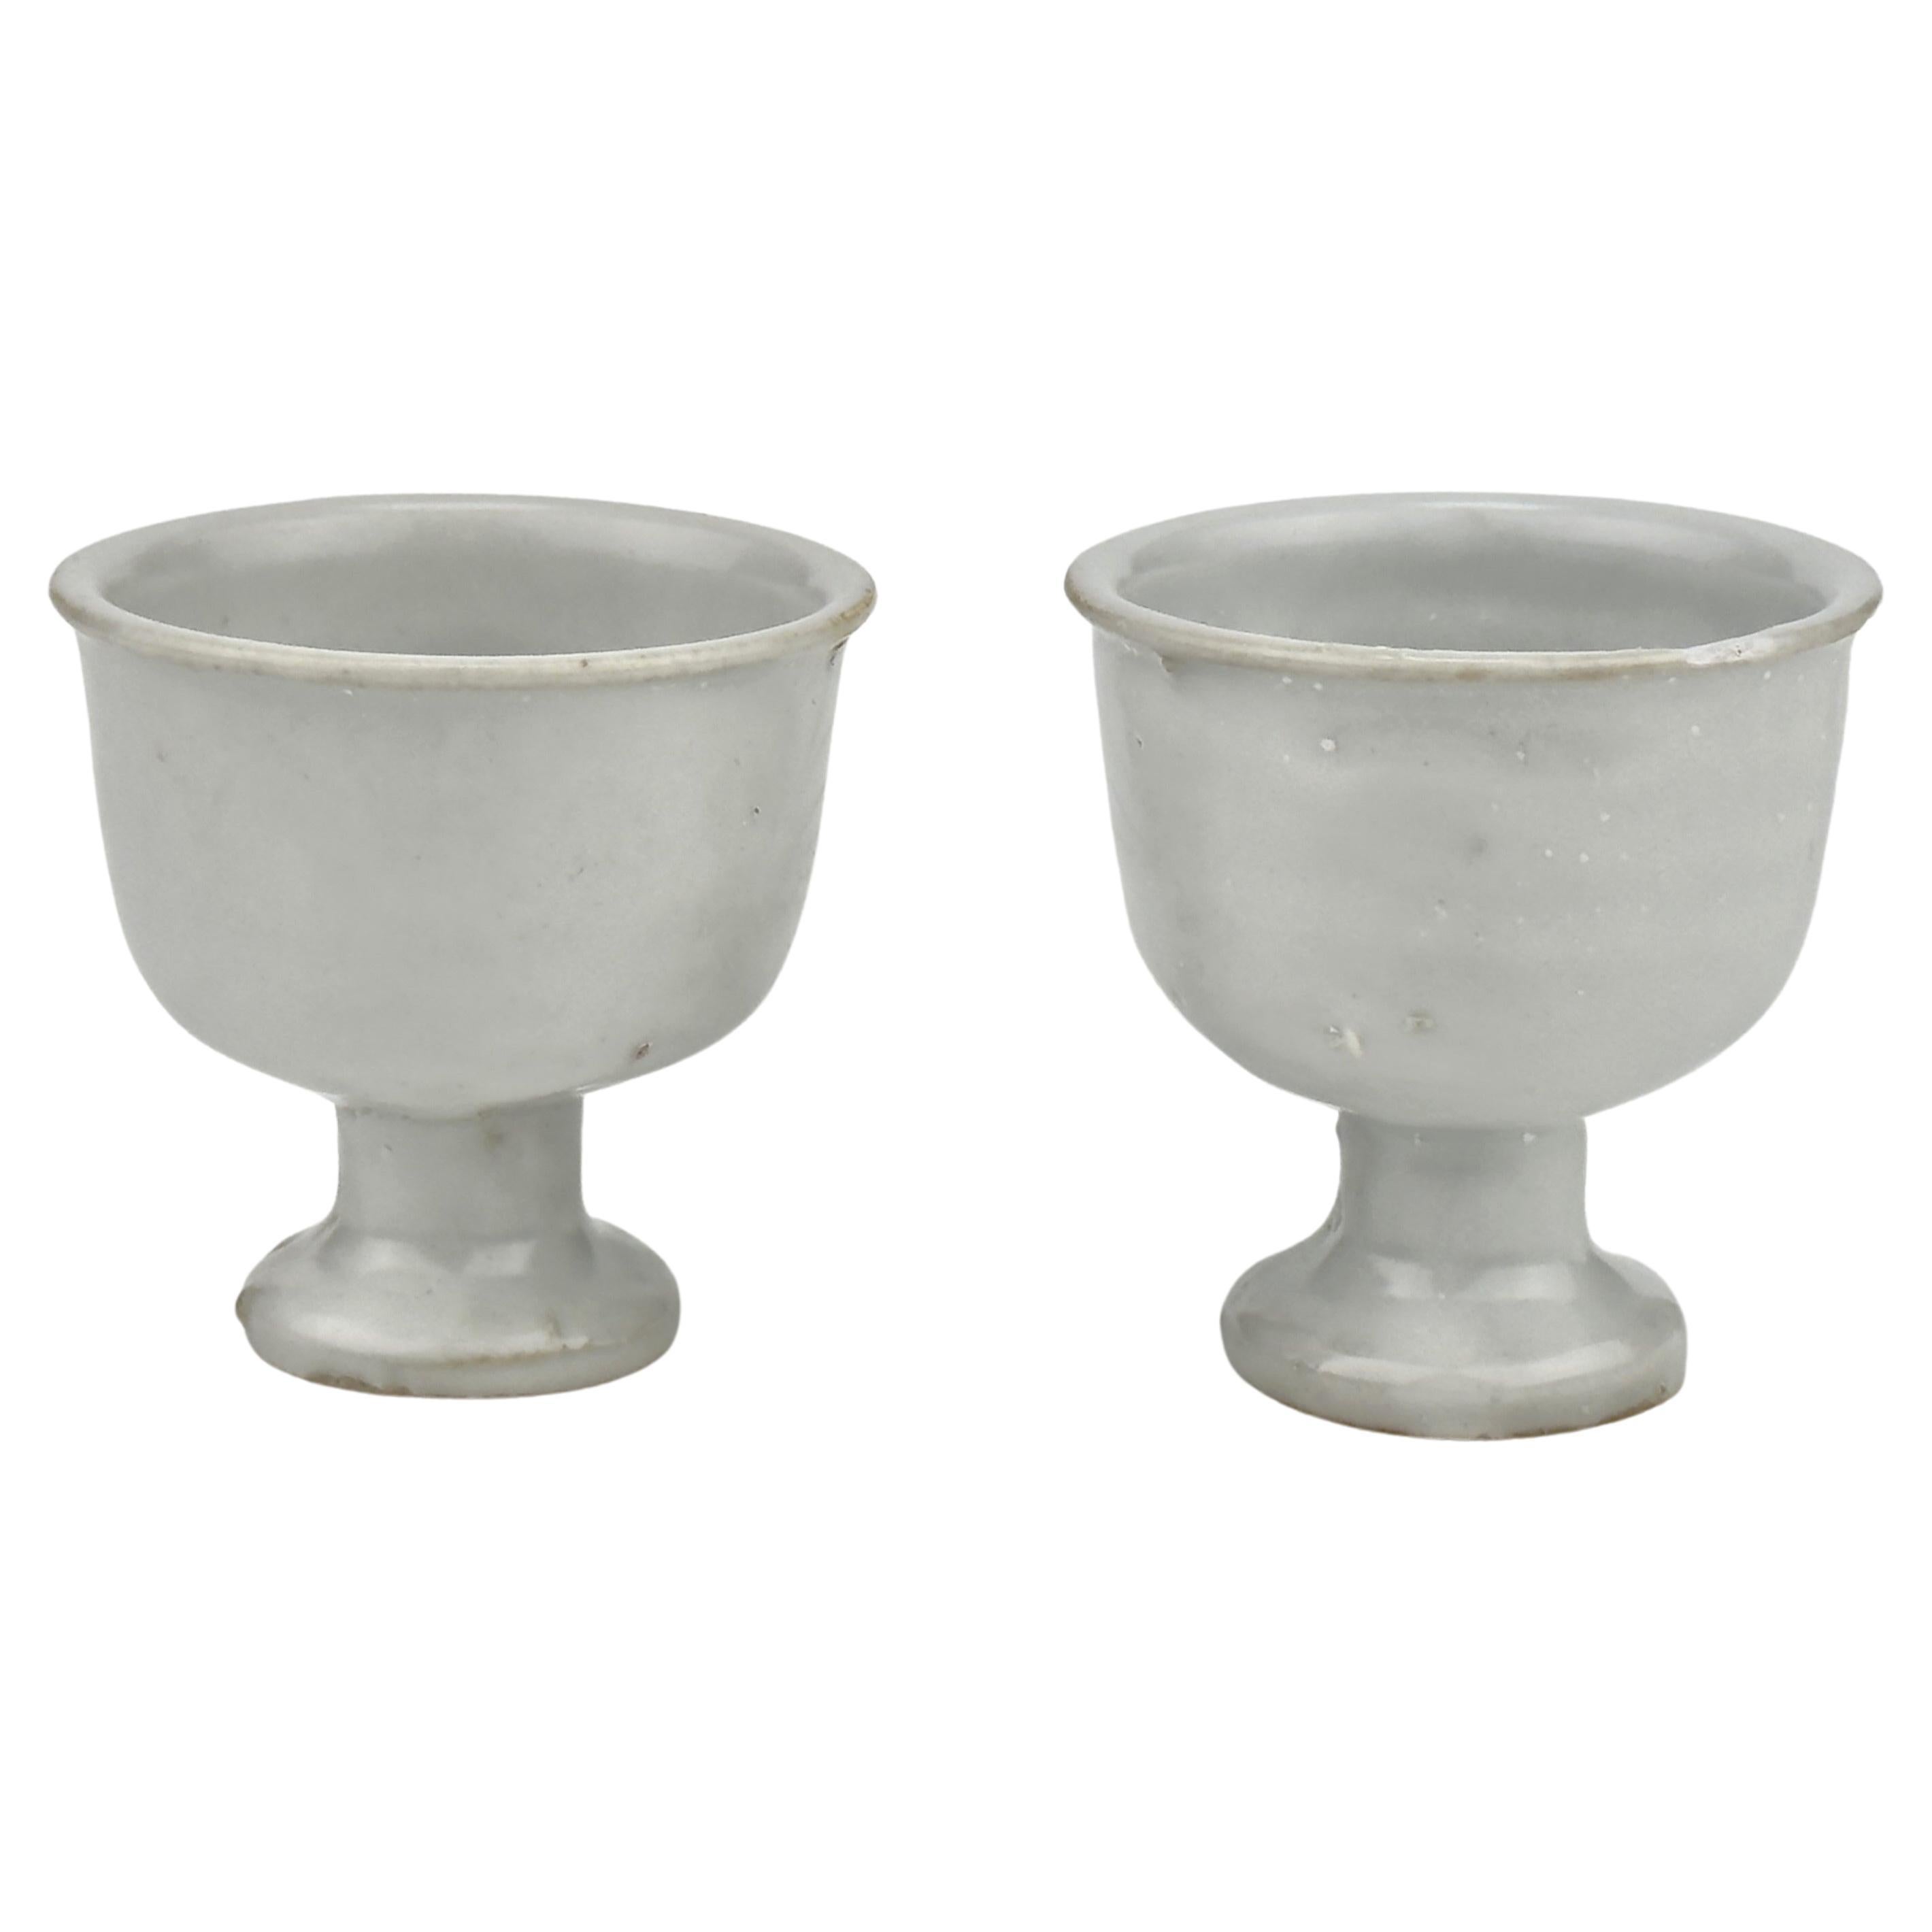 Paire de petites tasses en porcelaine blanche, époque Ming tardive (16-17e siècles)